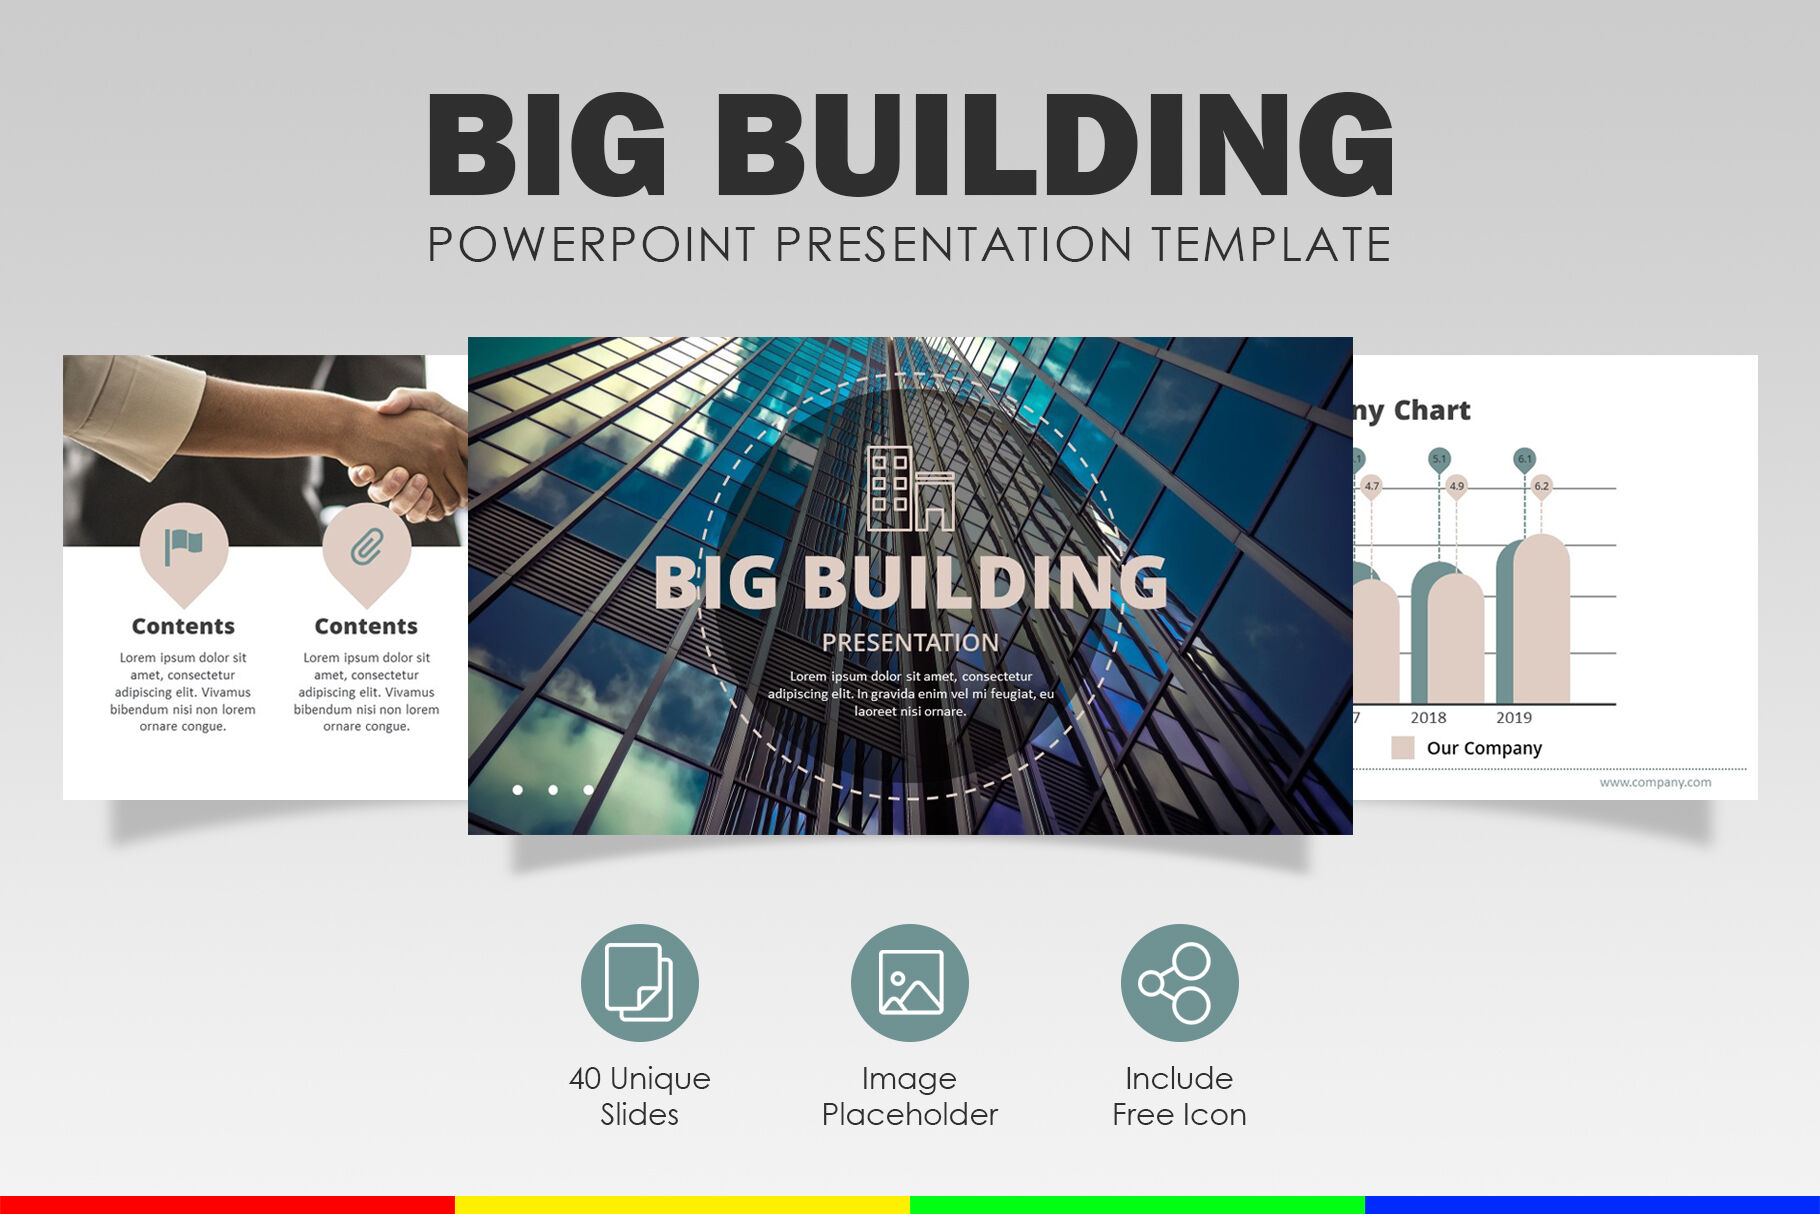 Mẫu PowerPoint doanh nghiệp to lớn của chúng tôi sẽ giúp cho việc thuyết trình và giới thiệu sản phẩm của bạn trở nên dễ dàng và ấn tượng. Với những hình ảnh cân đối và tinh tế, chúng tôi sẽ giúp cho bạn thu hút sự chú ý của khách hàng và tạo ra ấn tượng mạnh mẽ cho sản phẩm của bạn. Hãy xem qua bằng cách nhấn vào ảnh liên quan!